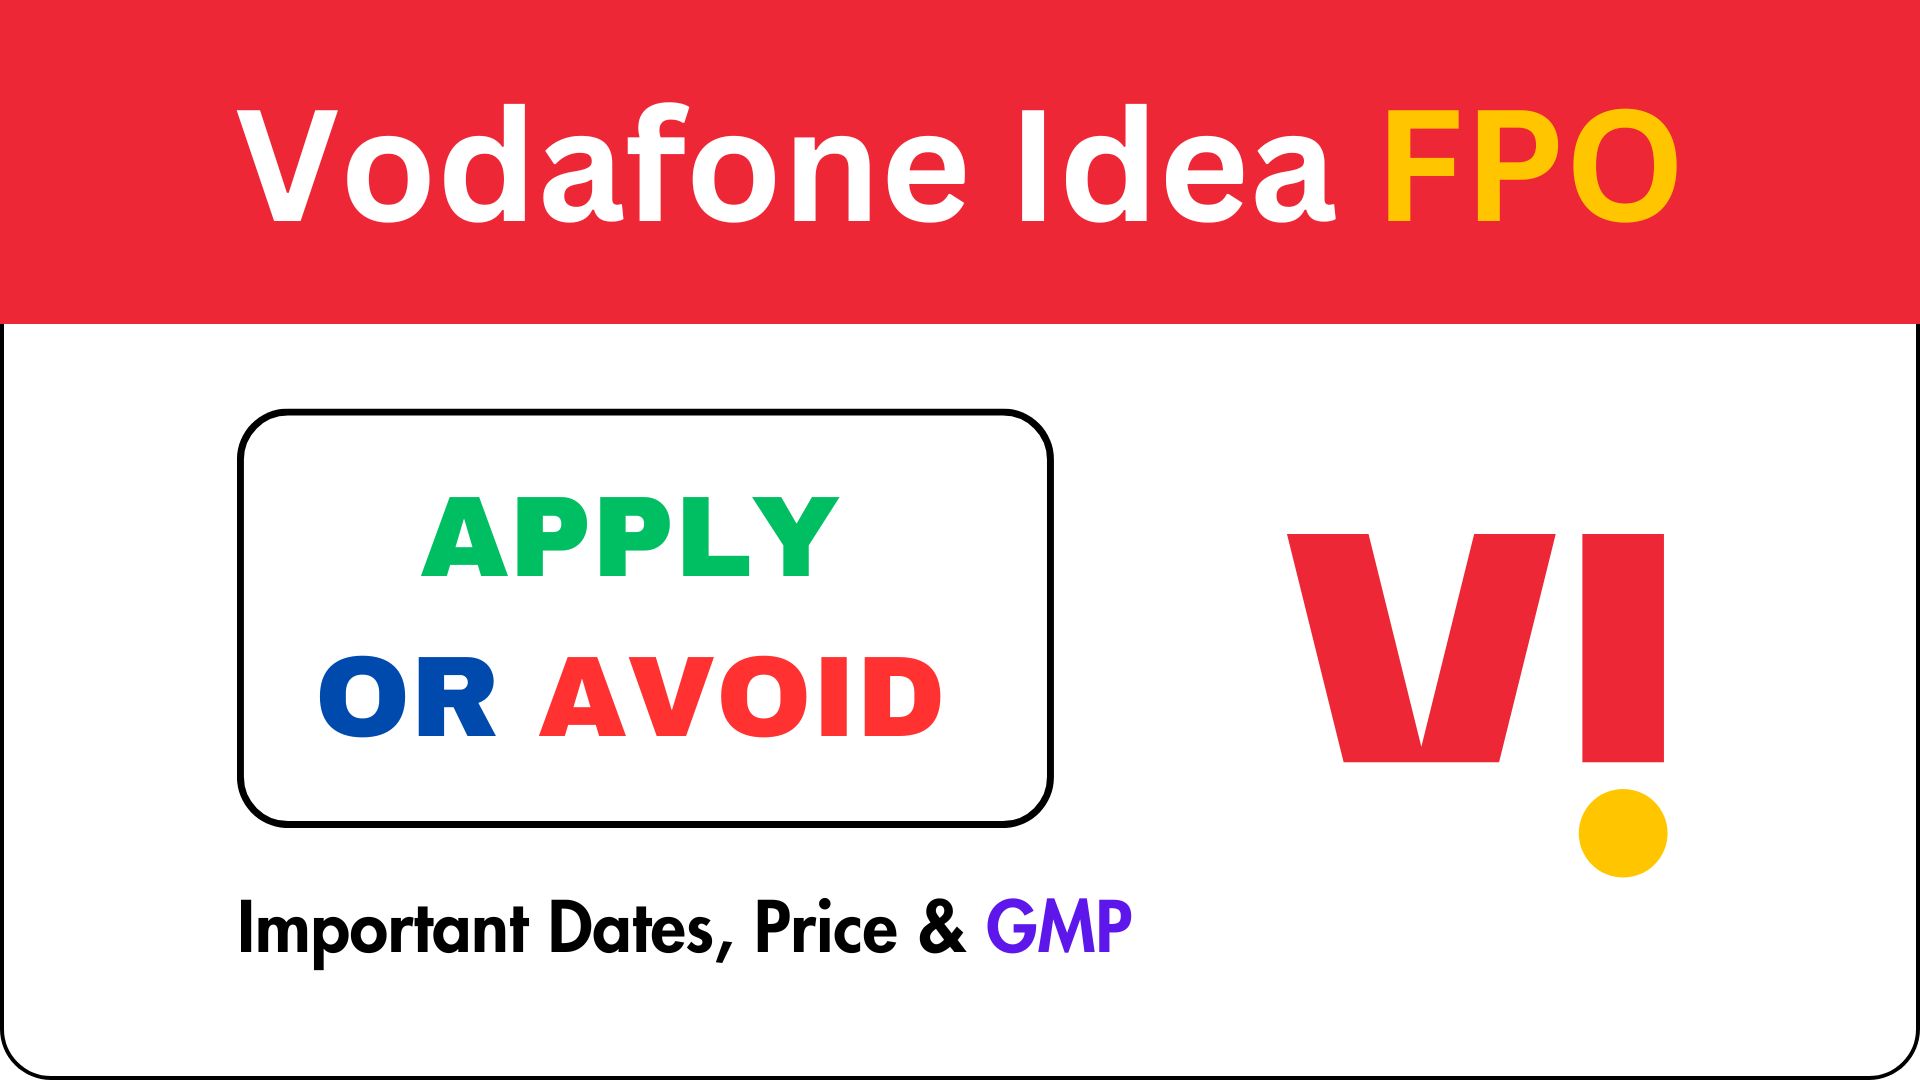 Vodafone Idea FPO